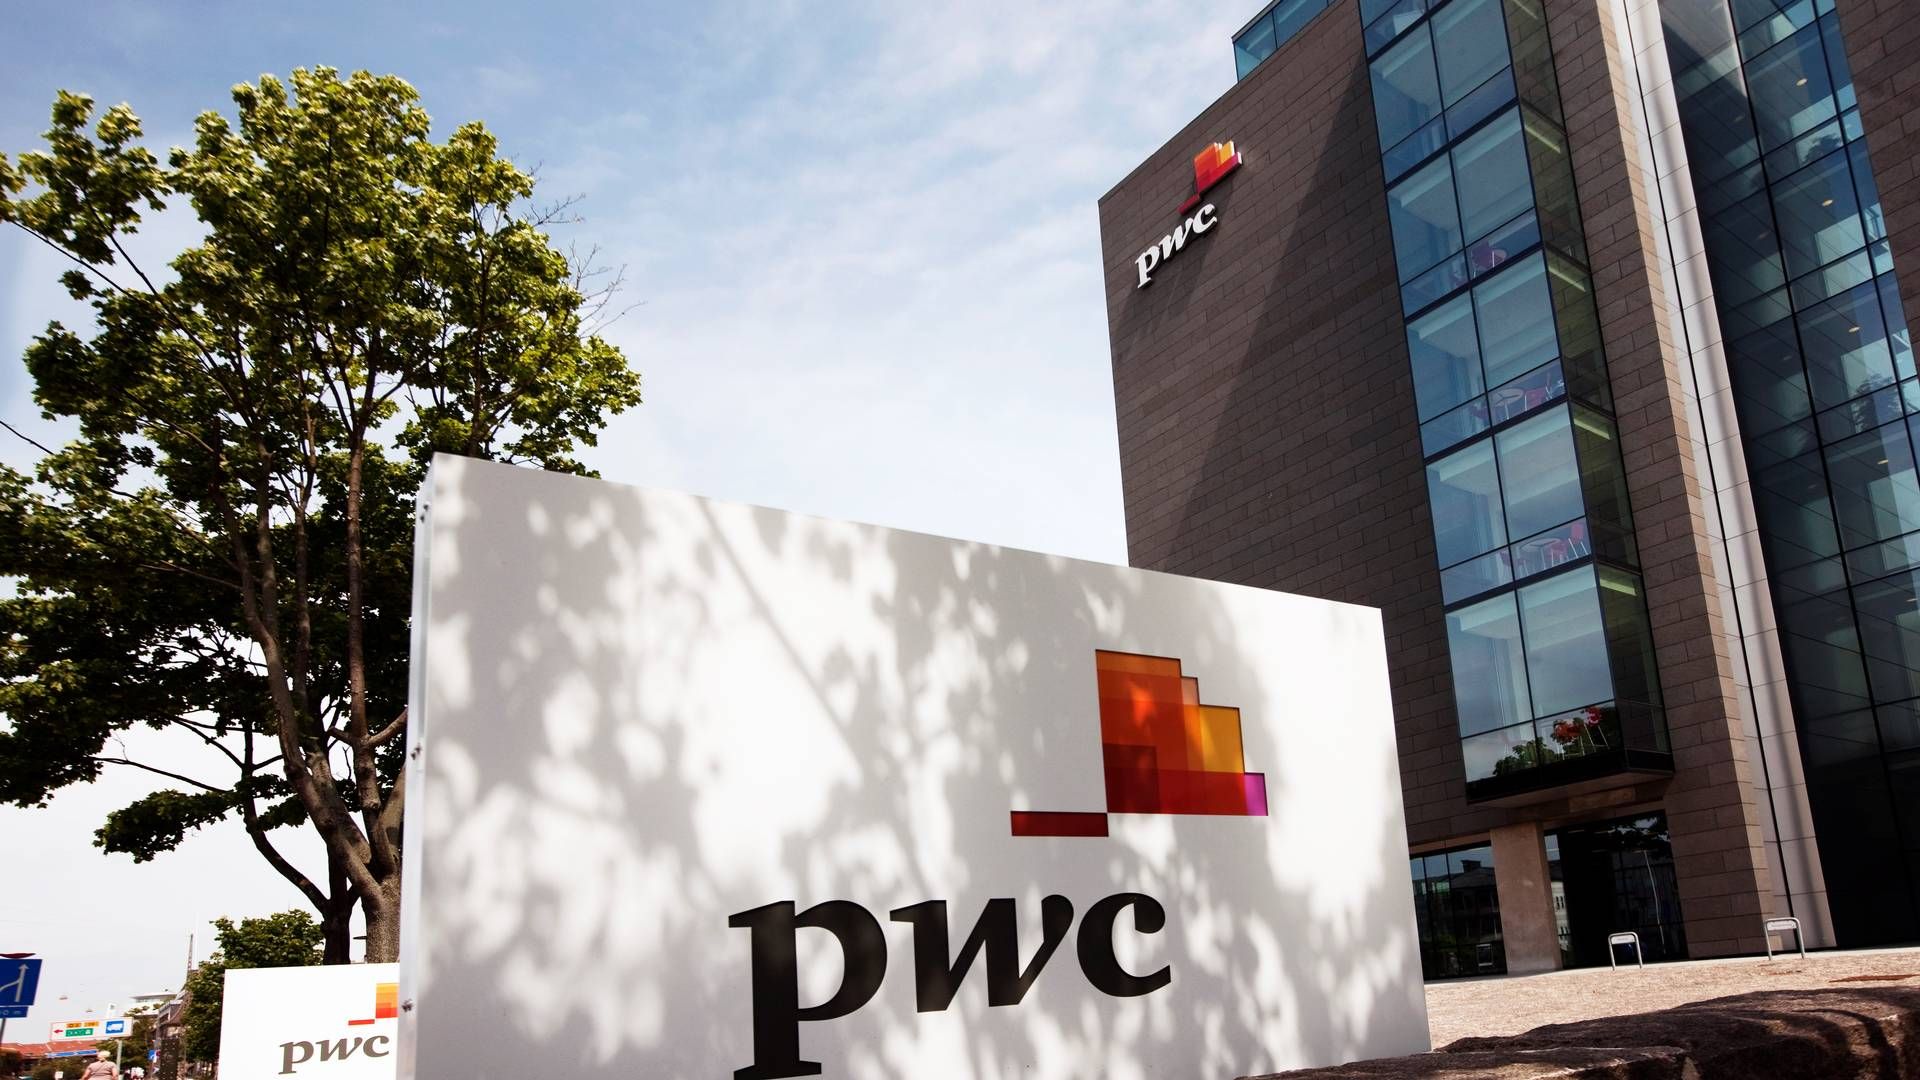 Seks ejerpartnere i PWC har i privat sammenhæng ageret udlånere til ejendomsselskab. | Foto: PWC / PR